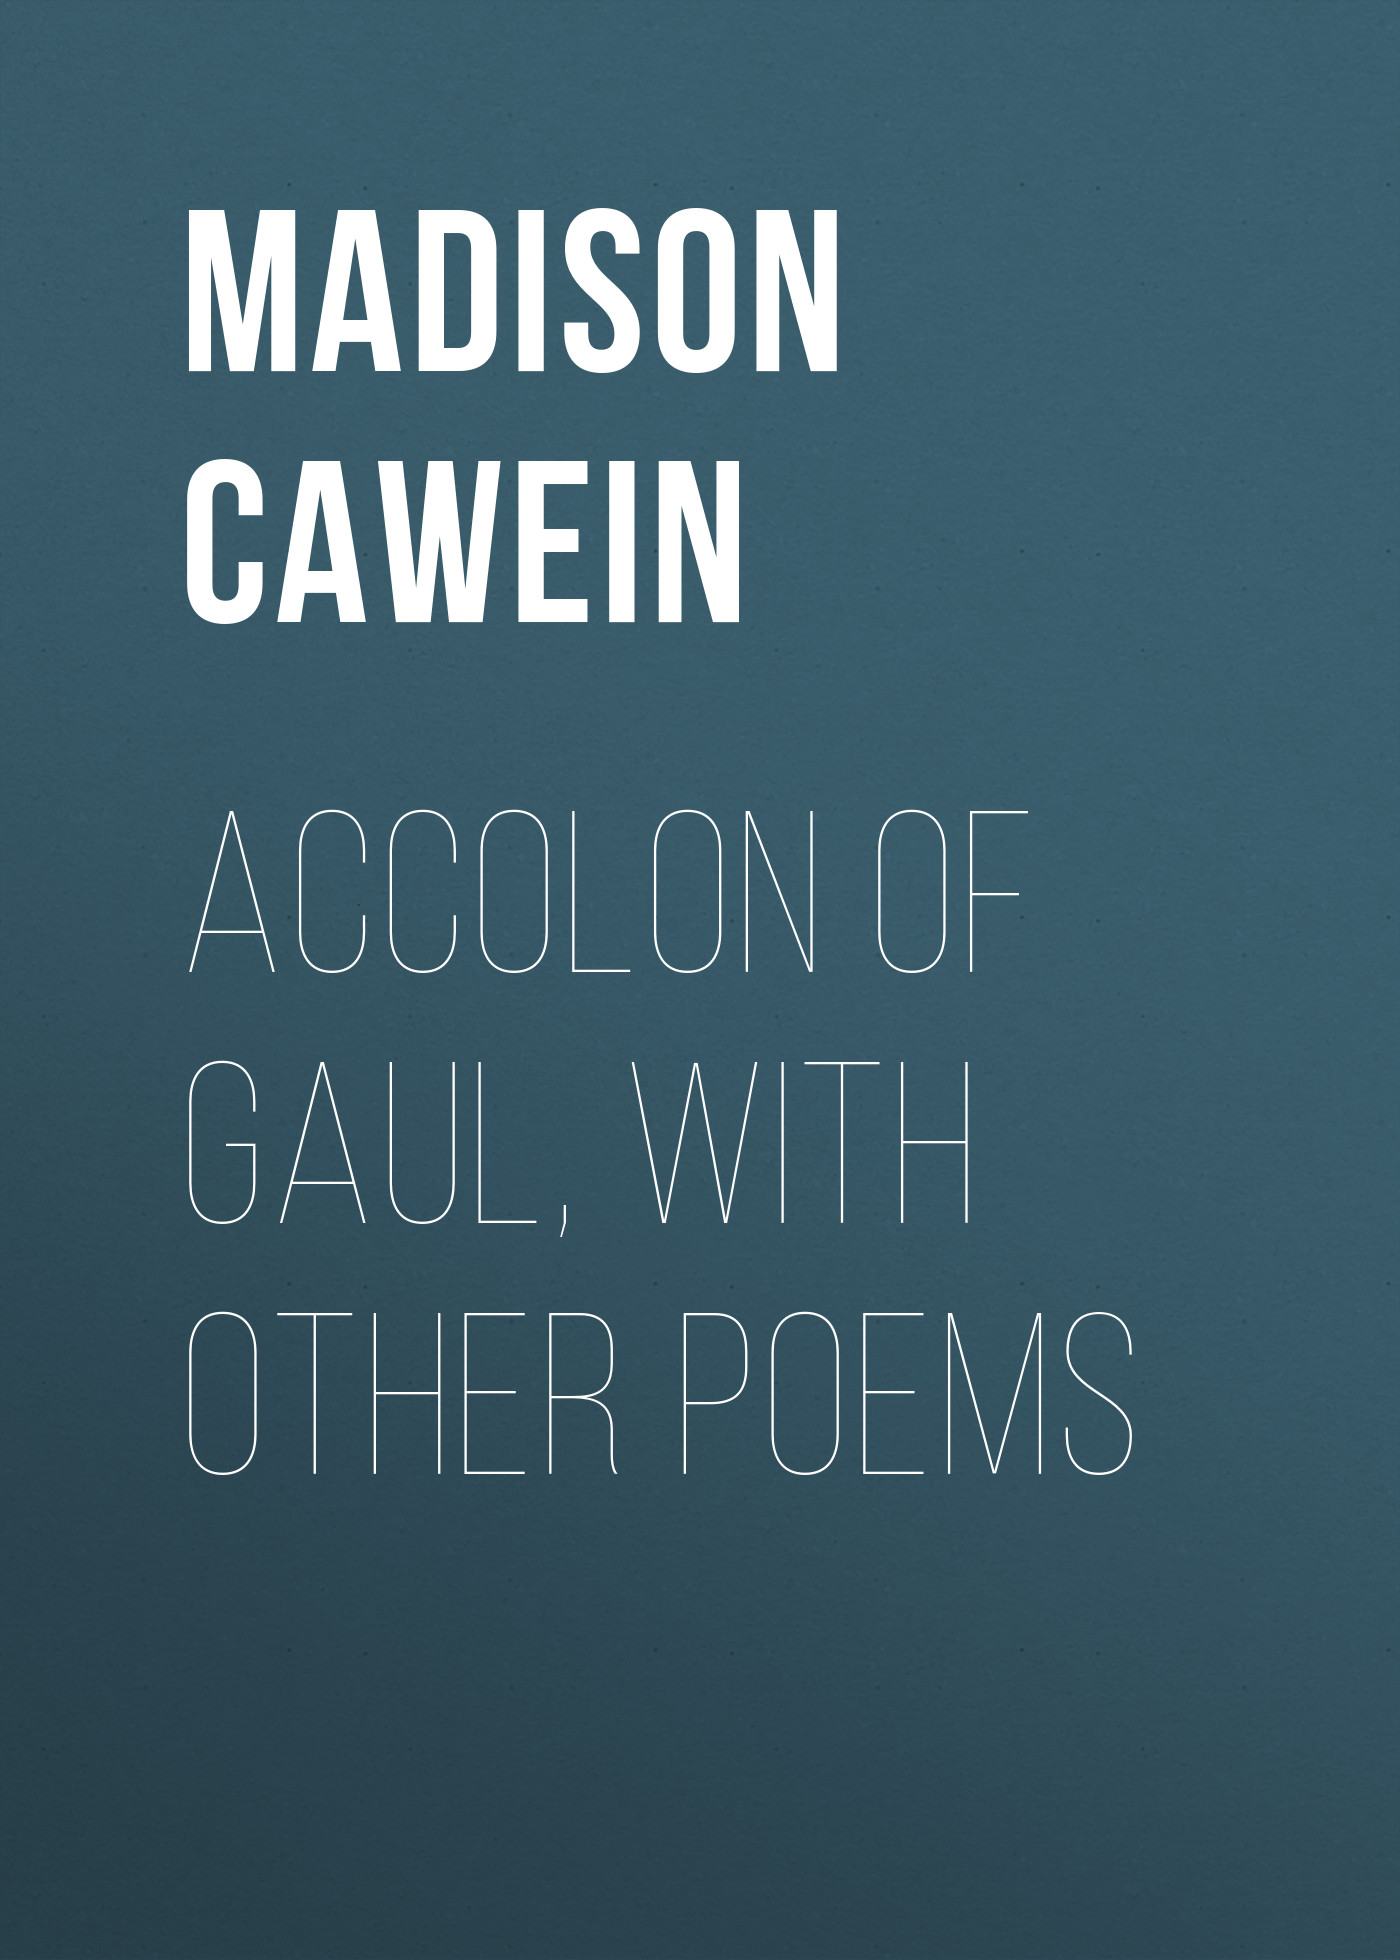 Книга Accolon of Gaul, with Other Poems из серии , созданная Madison Cawein, может относится к жанру Поэзия, Зарубежная классика, Зарубежные стихи. Стоимость электронной книги Accolon of Gaul, with Other Poems с идентификатором 23164539 составляет 5.99 руб.